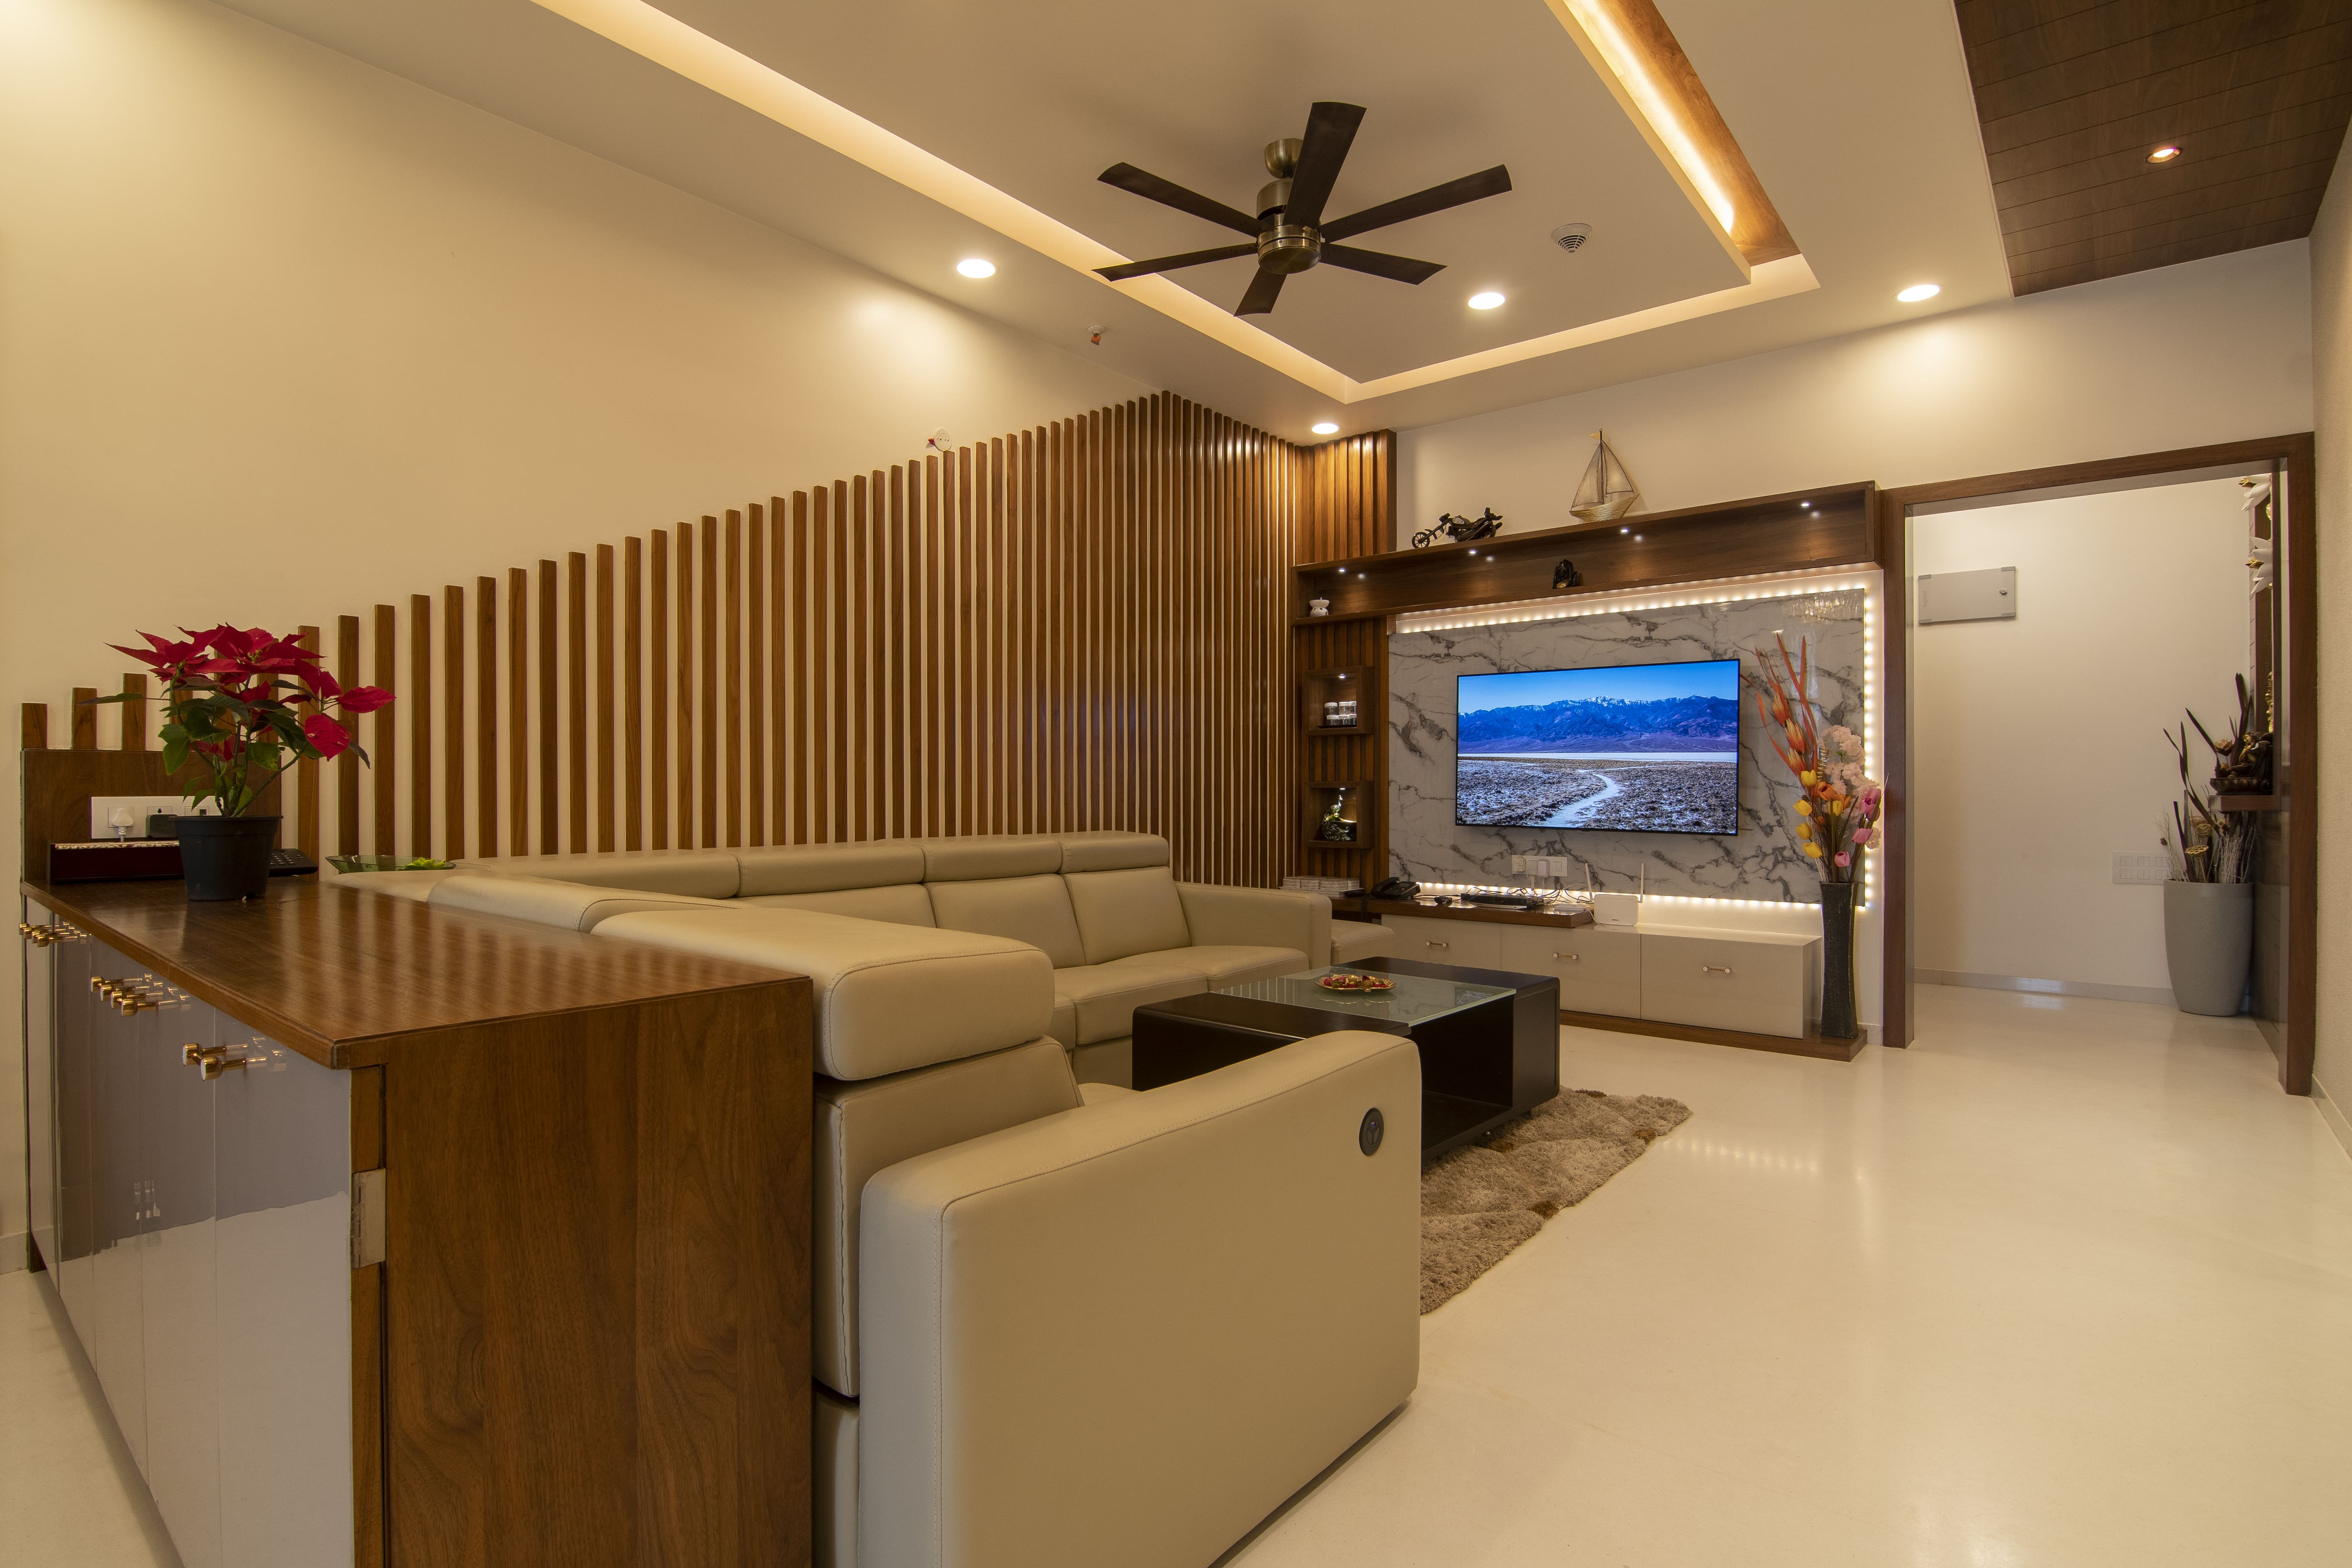 Premium living room interior design